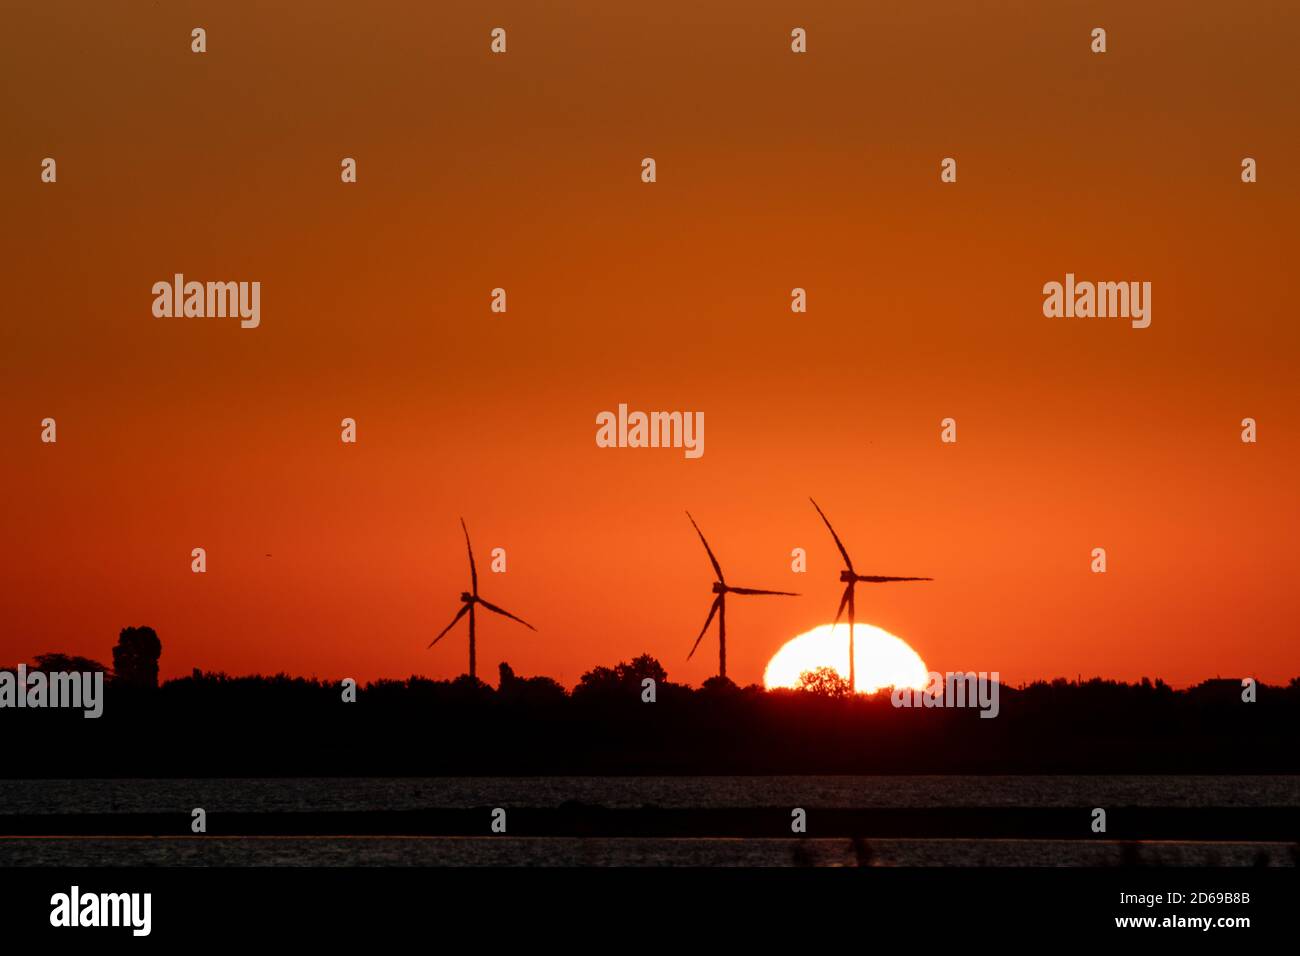 Generadores de viento granja silueta en el amanecer rojo naranja vibrante cielo y gran sol en ascenso. Turbinas de energía industria sostenible Foto de stock